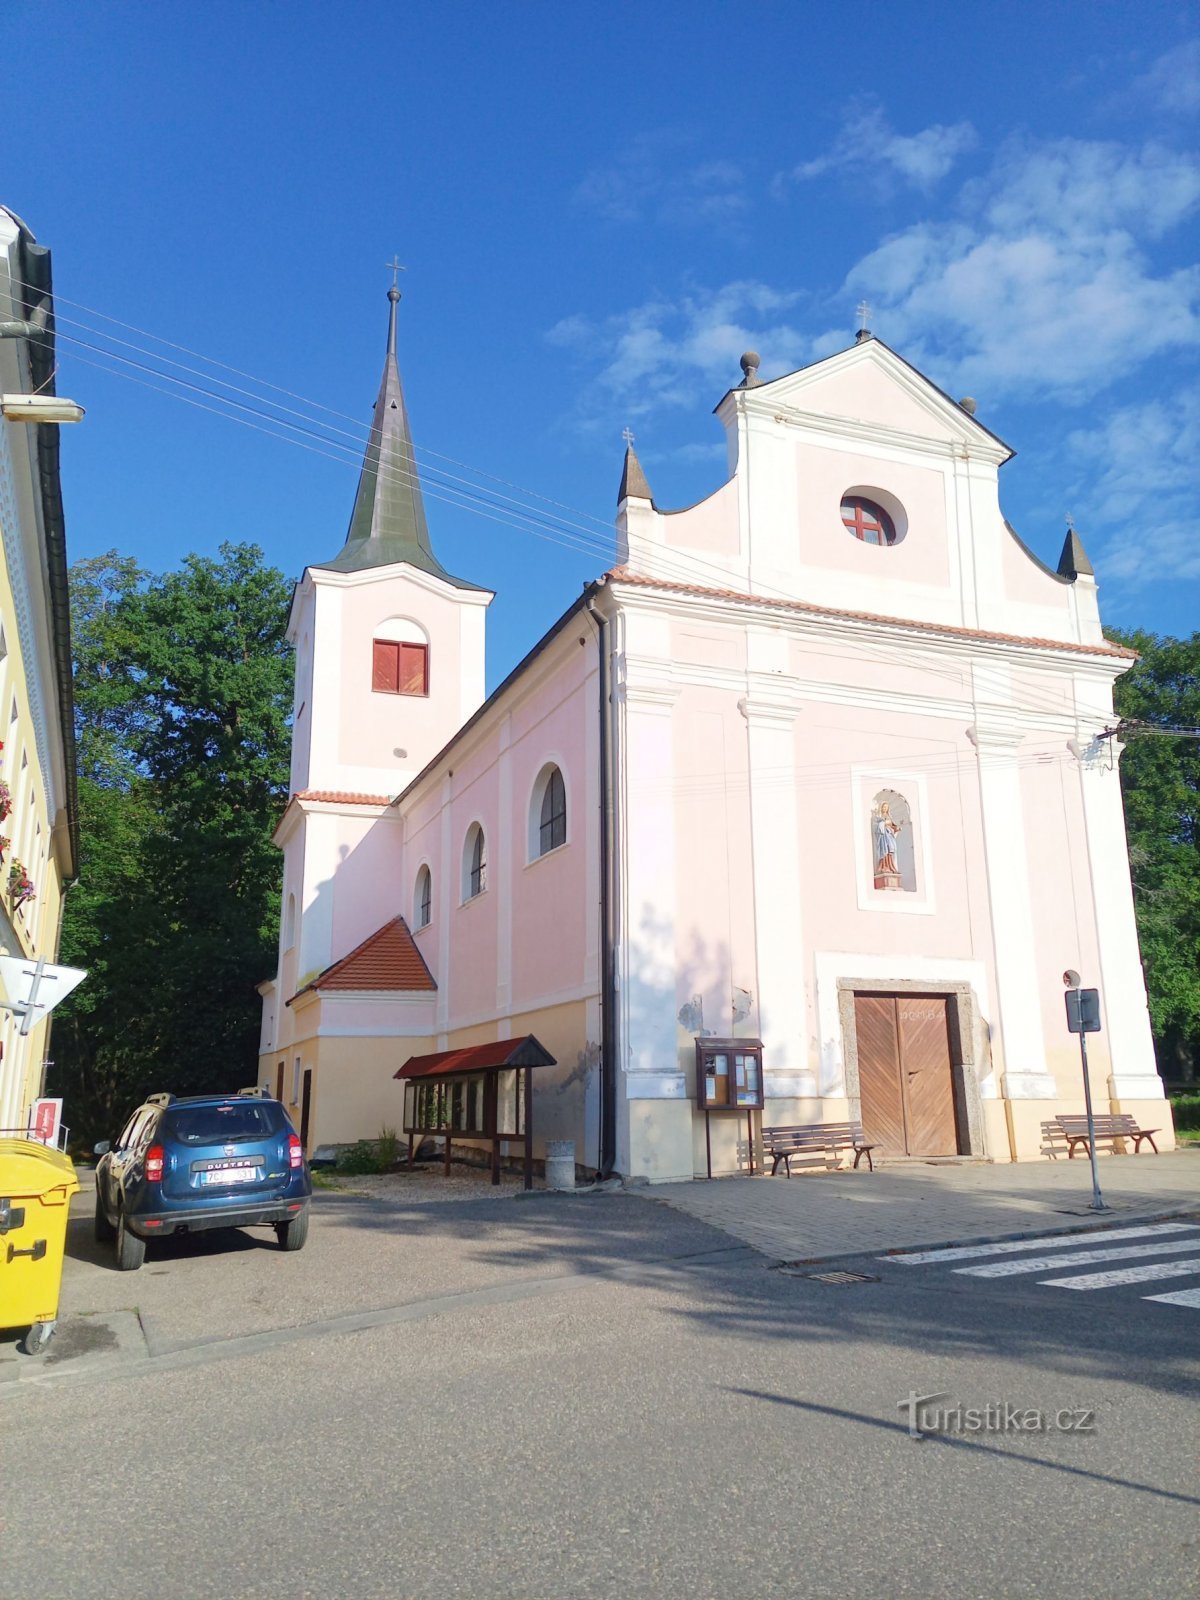 1. Nhà thờ Baroque của Chúa Ba Ngôi ở Nadějkov từ năm 1628